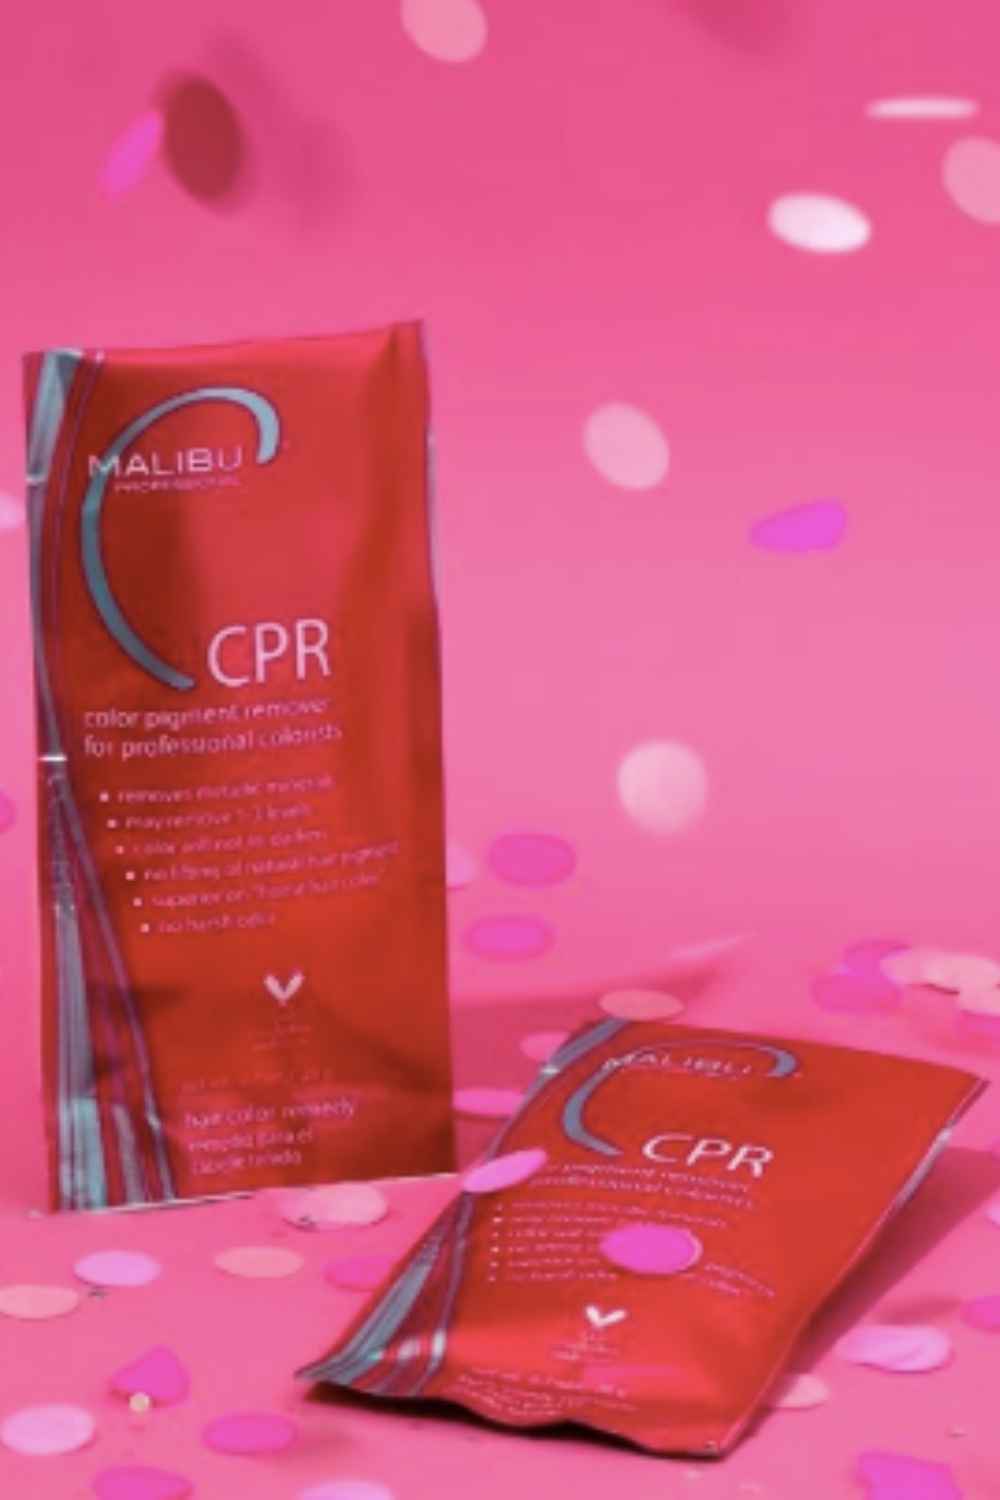 CPR Malibu hair treatment